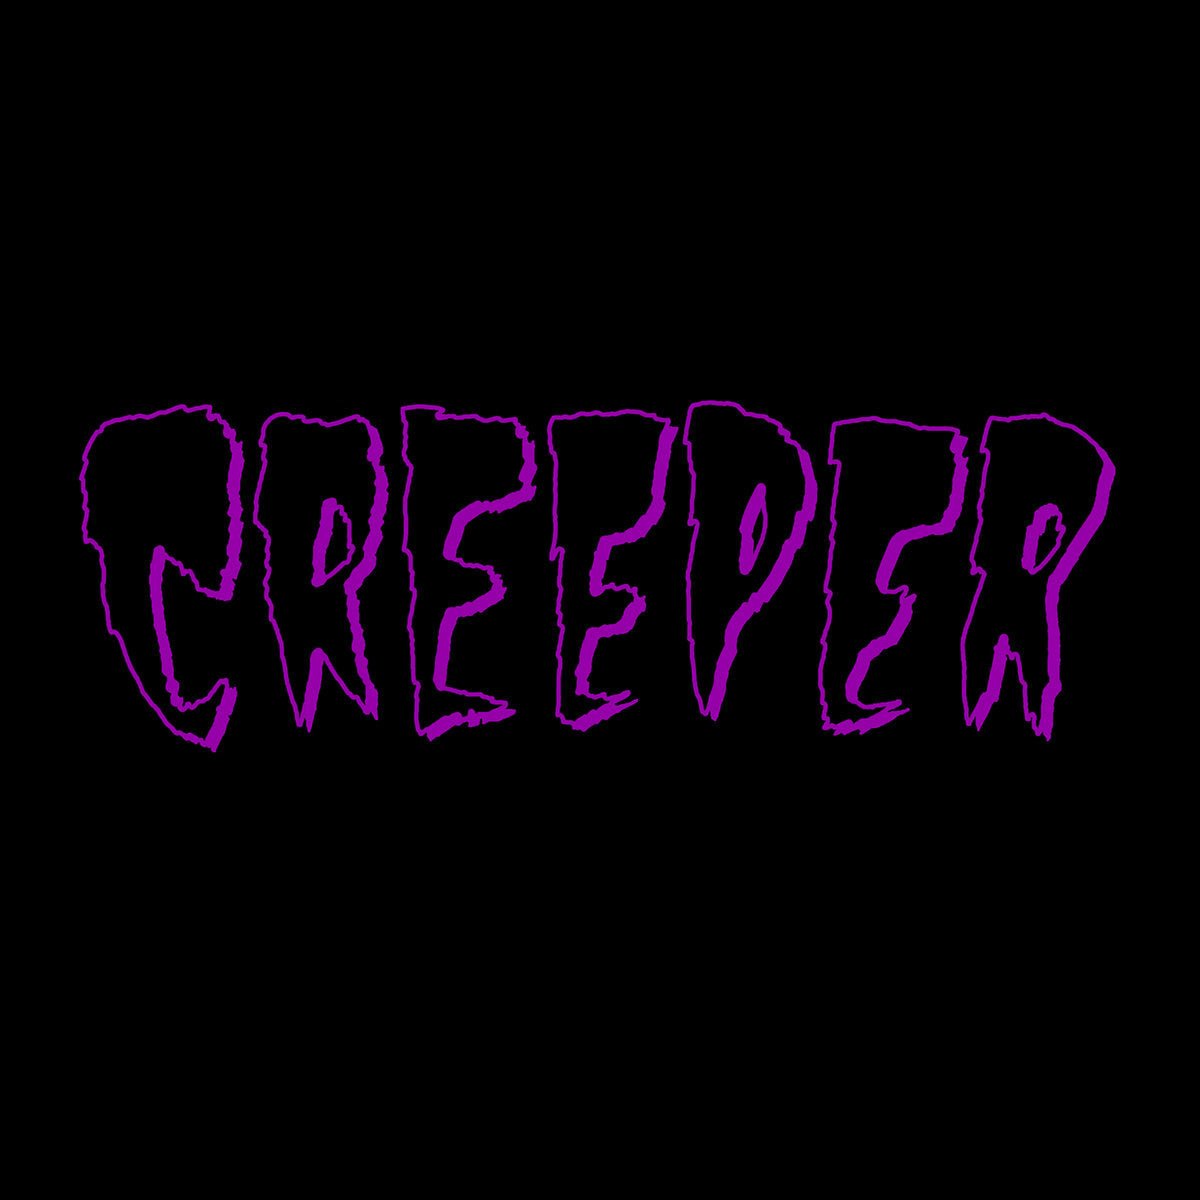 Creeper - s/t 12" - Vinyl - Roadrunner